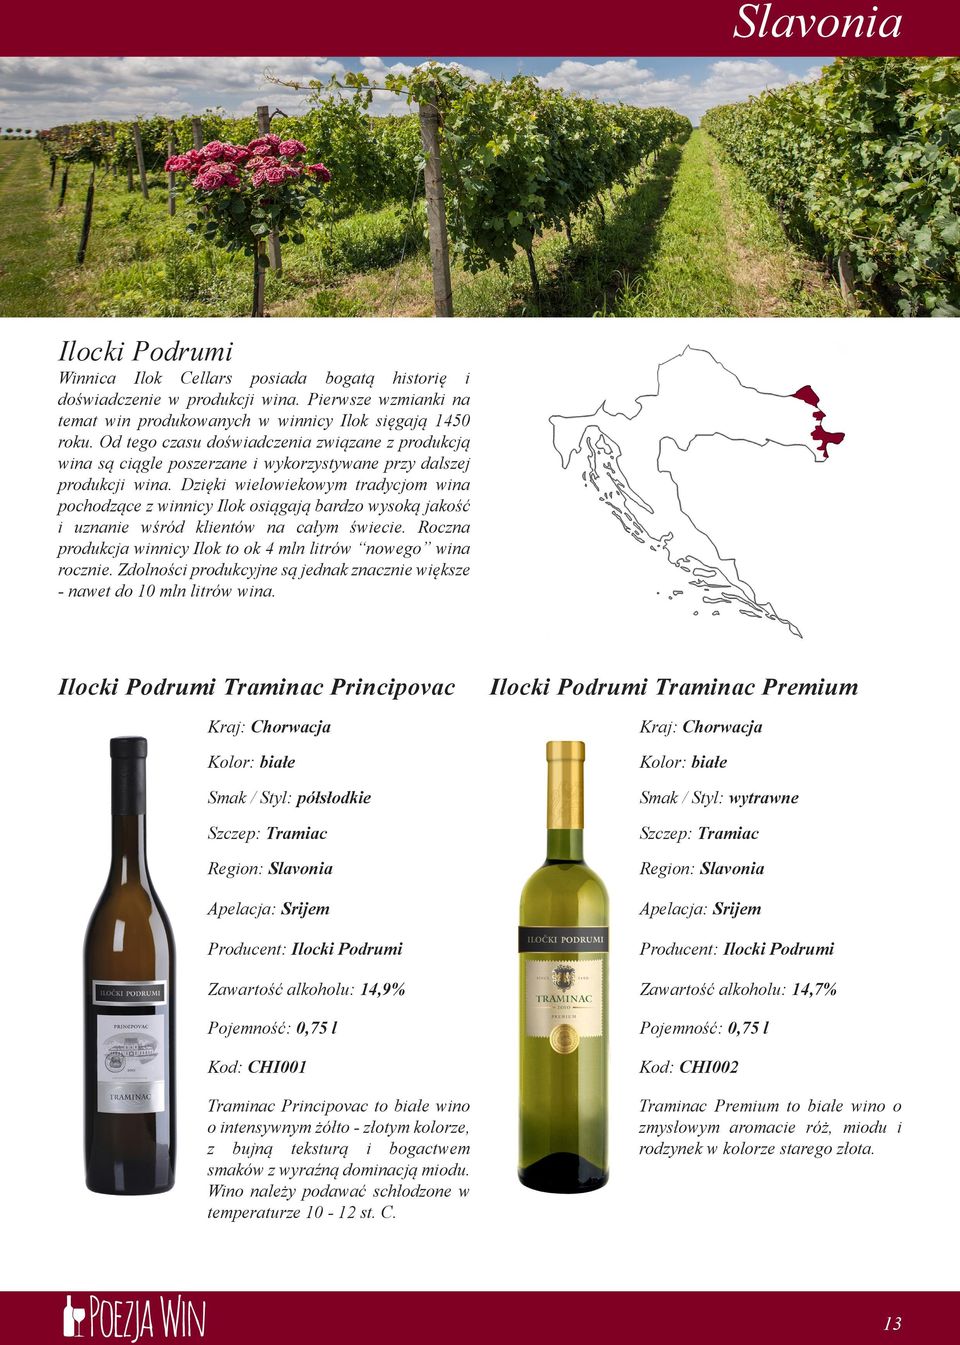 Dzięki wielowiekowym tradycjom wina pochodzące z winnicy Ilok osiągają bardzo wysoką jakość i uznanie wśród klientów na całym świecie.